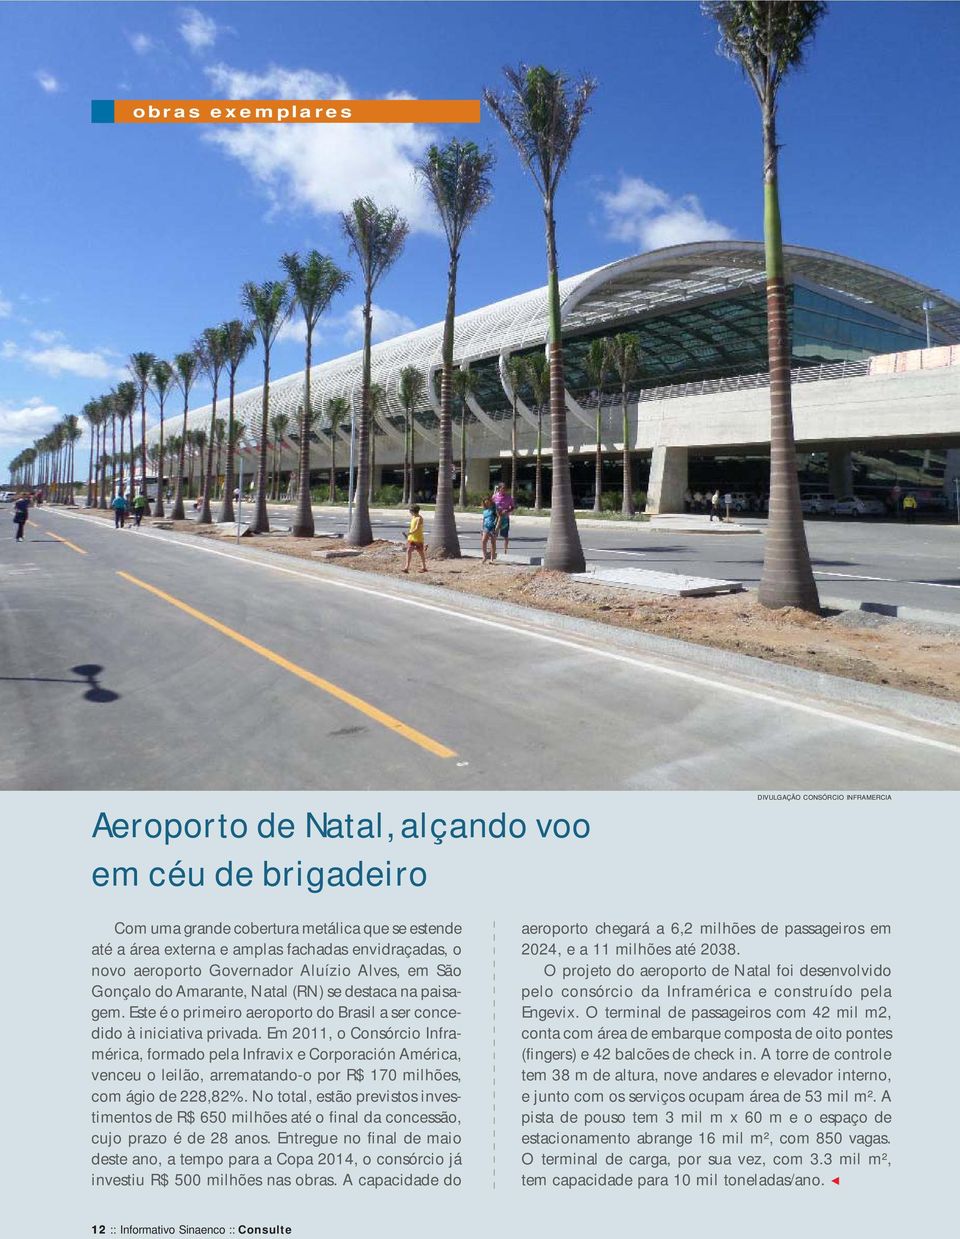 Amarante, Natal (RN) se destaca na paisagem. Este é o primeiro aeroporto do Brasil a ser concedido à iniciativa privada.